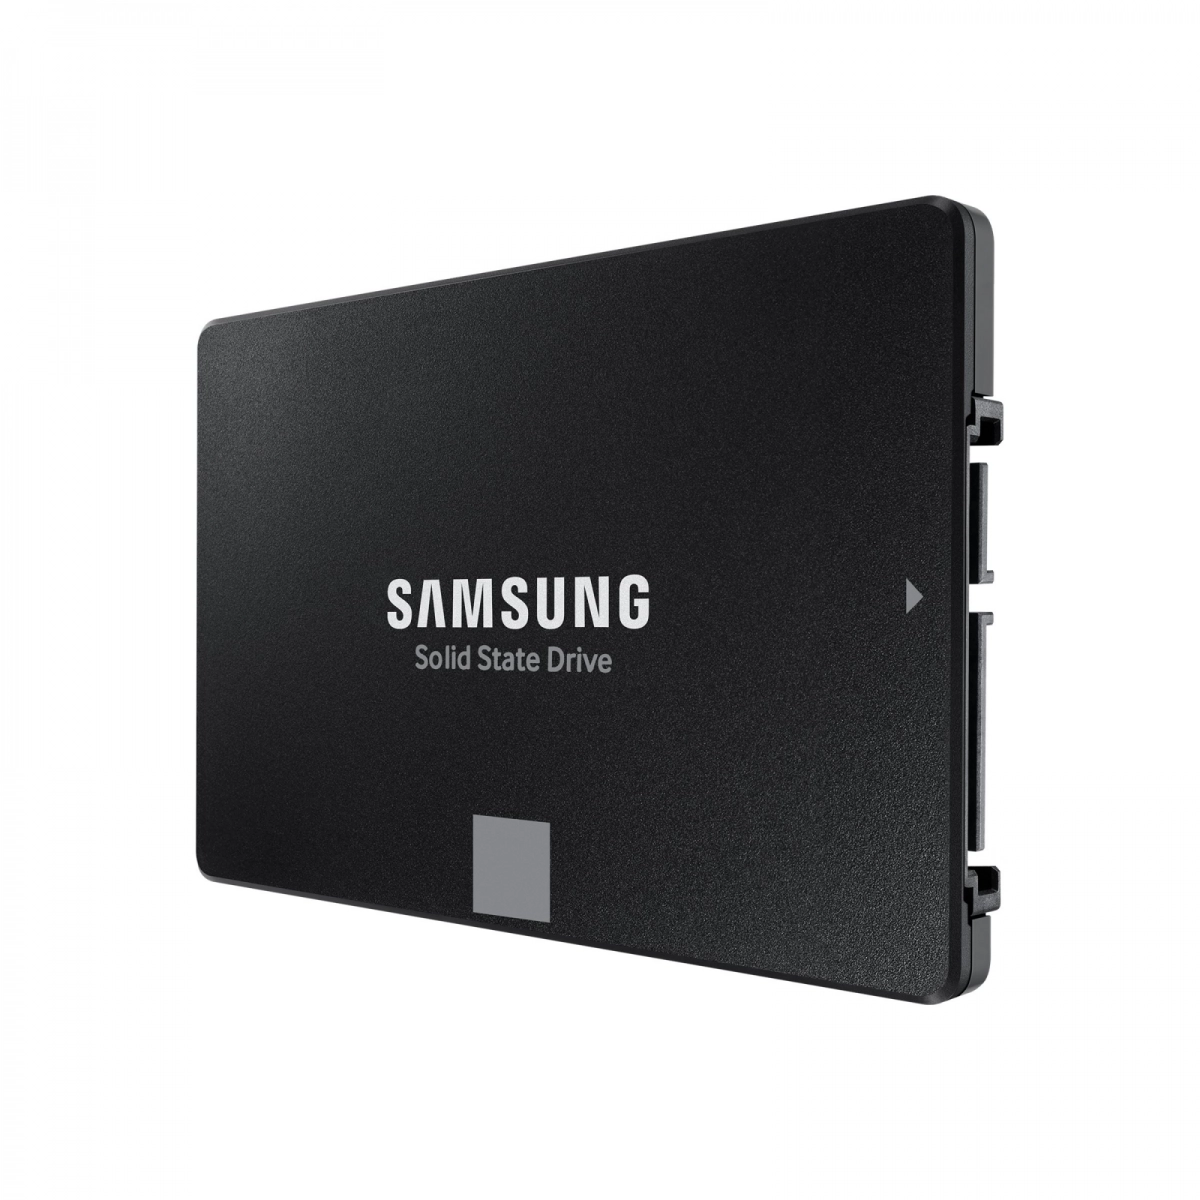 Notebook-Festplatte 500GB, SSD SATA3 MLC für HP Pavilion dv7-4301